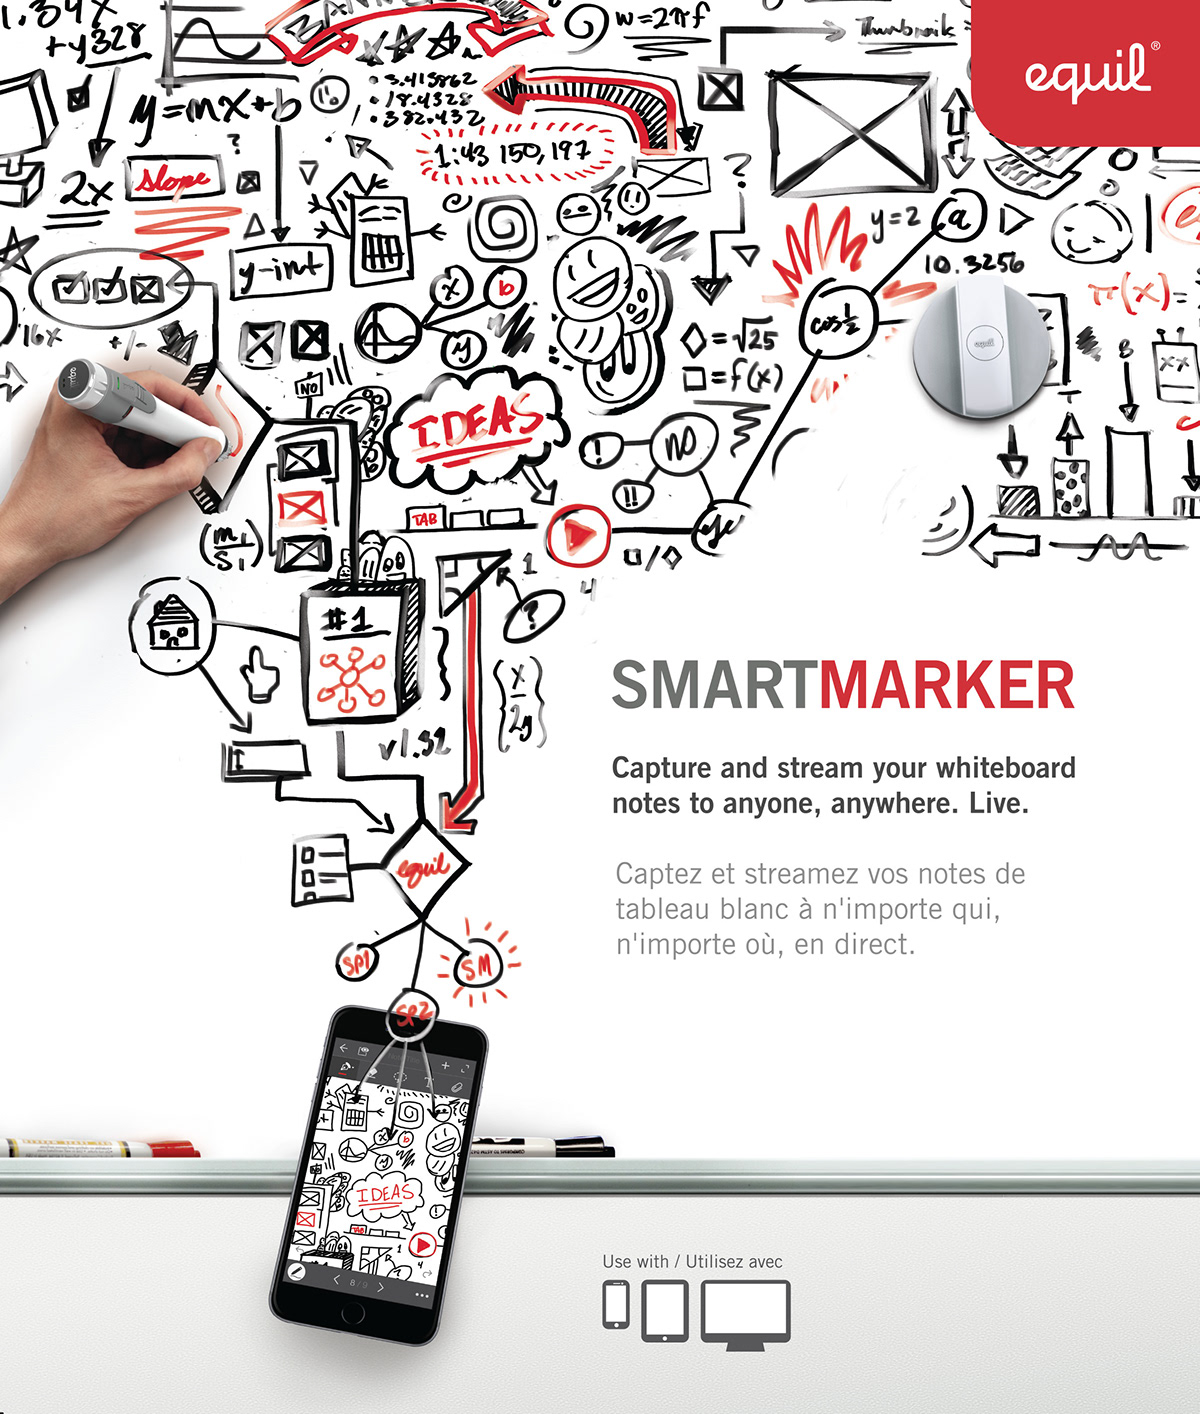 equil smartmarker equil smartmarker package design 